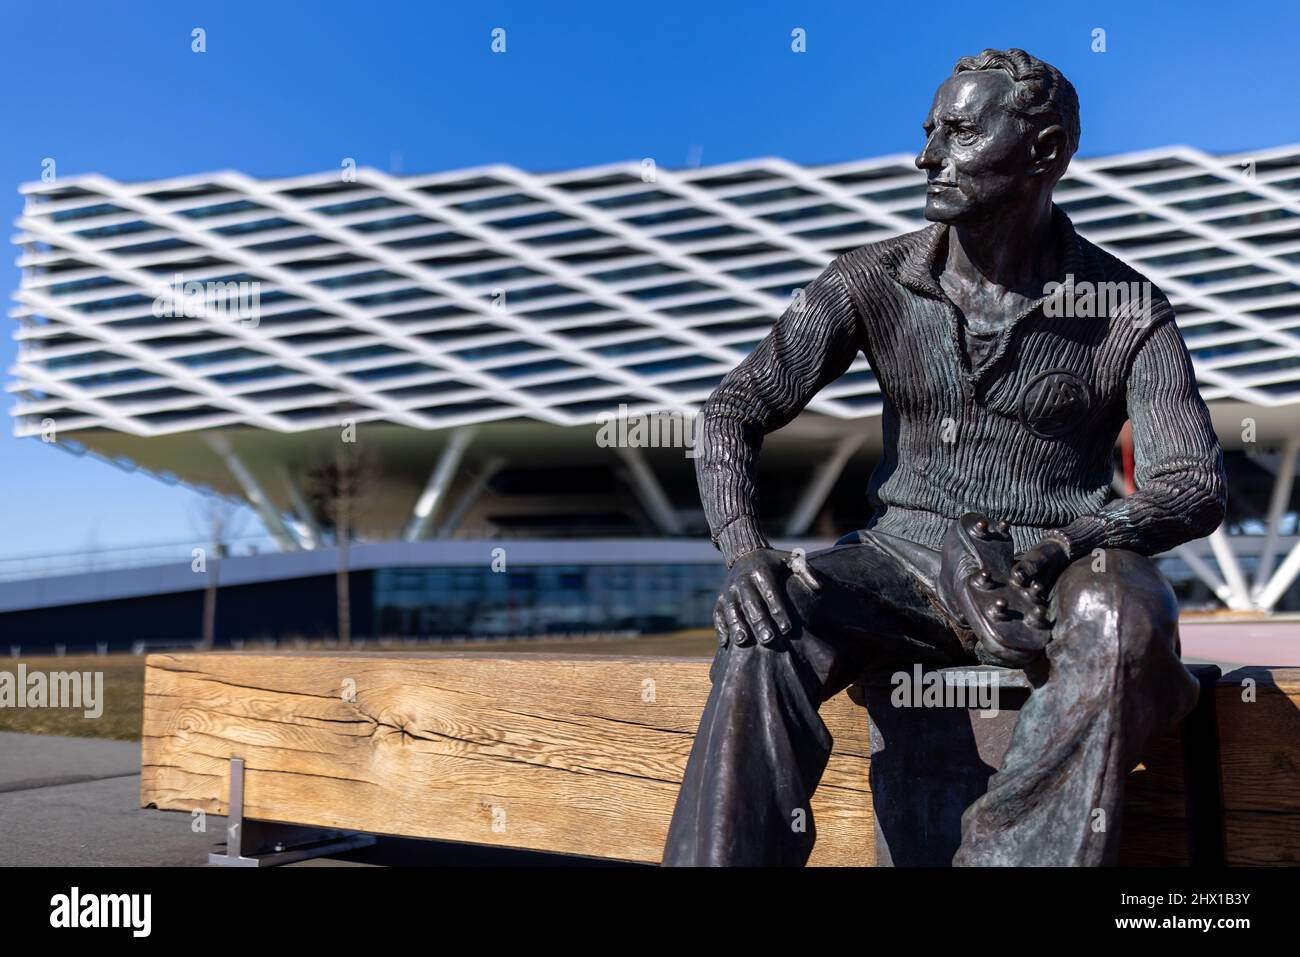 Alemania. 08th Mar, 2022. Una estatua del fundador Adolf 'Adi' Dassler se frente al edificio de oficinas 'Arena' en las instalaciones del fabricante de artículos deportivos Adidas. Adidas presenta